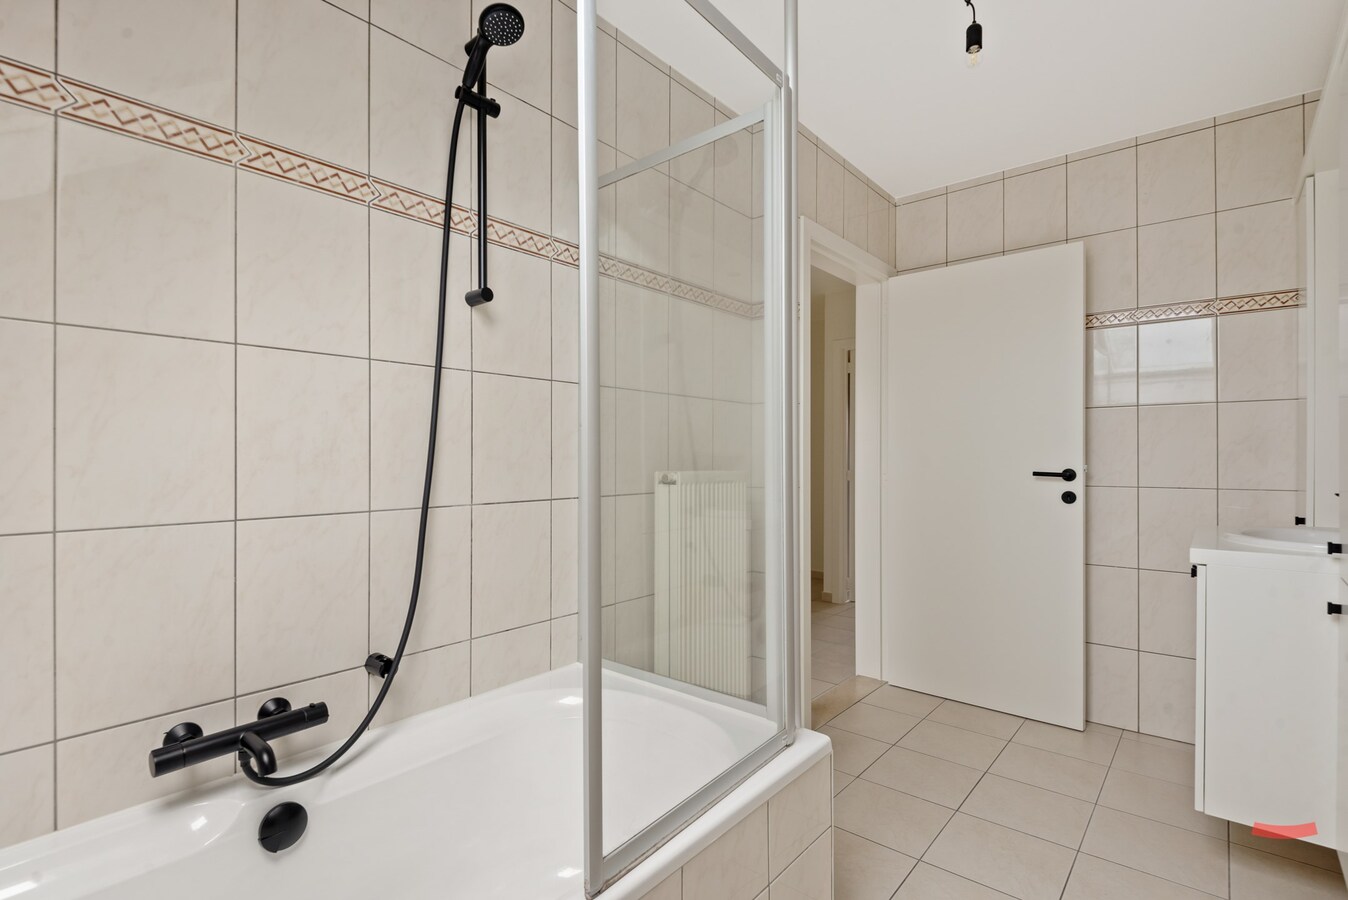 Appartement te koop | in afhandeling in Turnhout